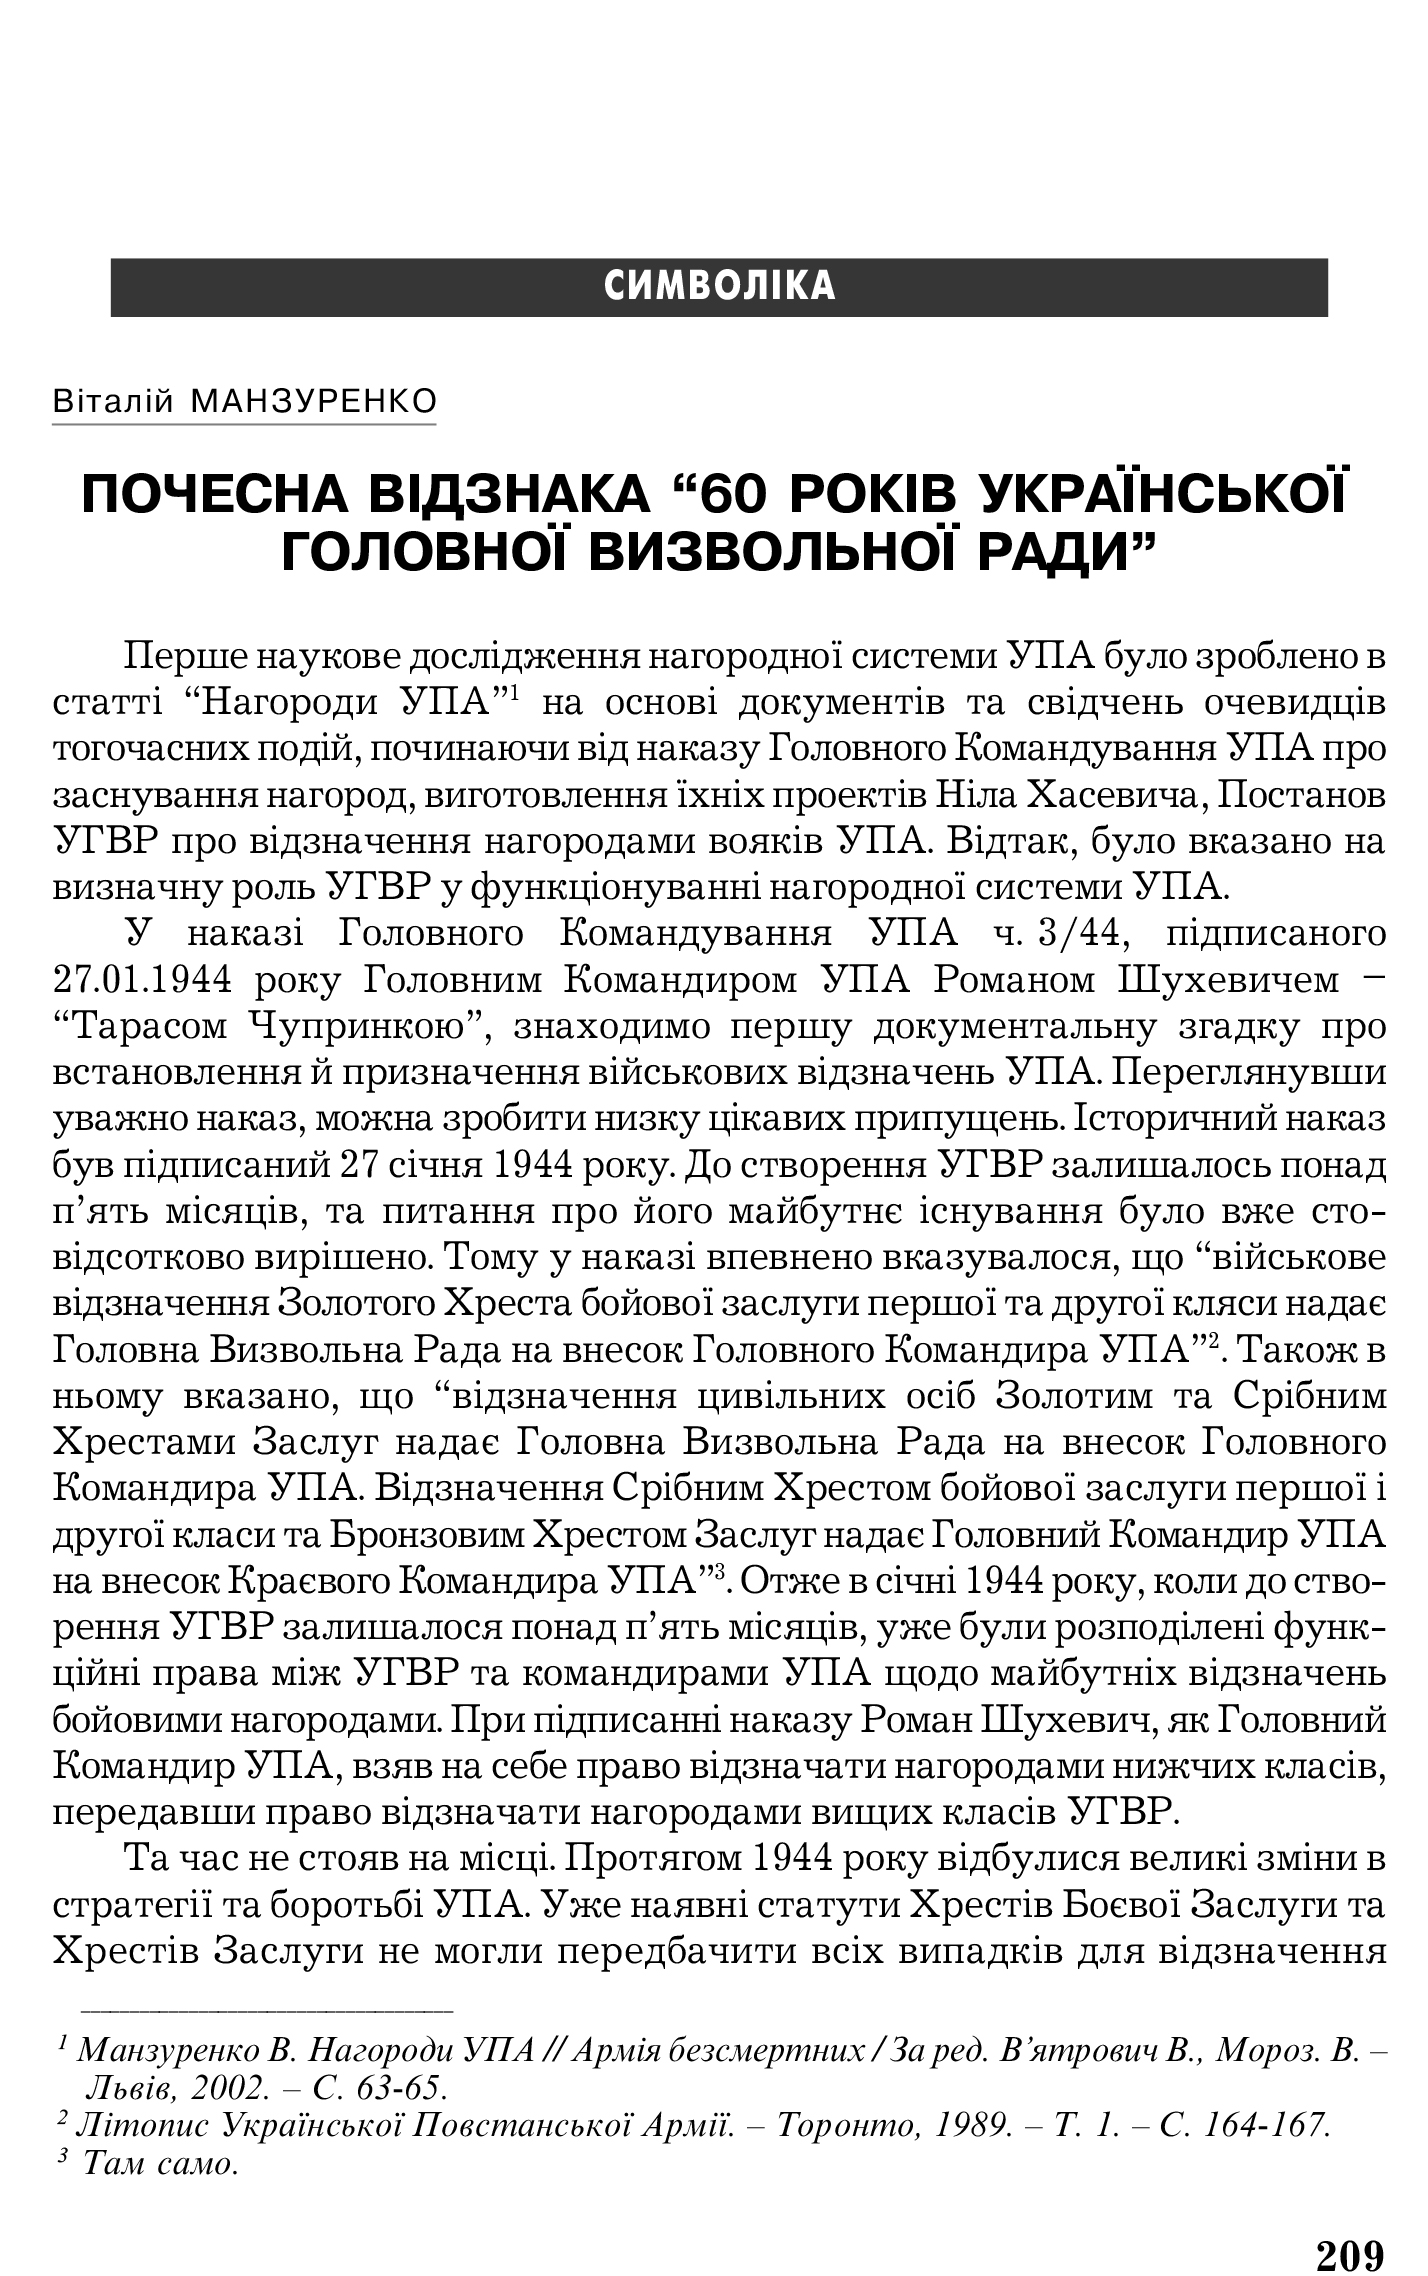 Український визвольний рух №5, ст. 209 - 214